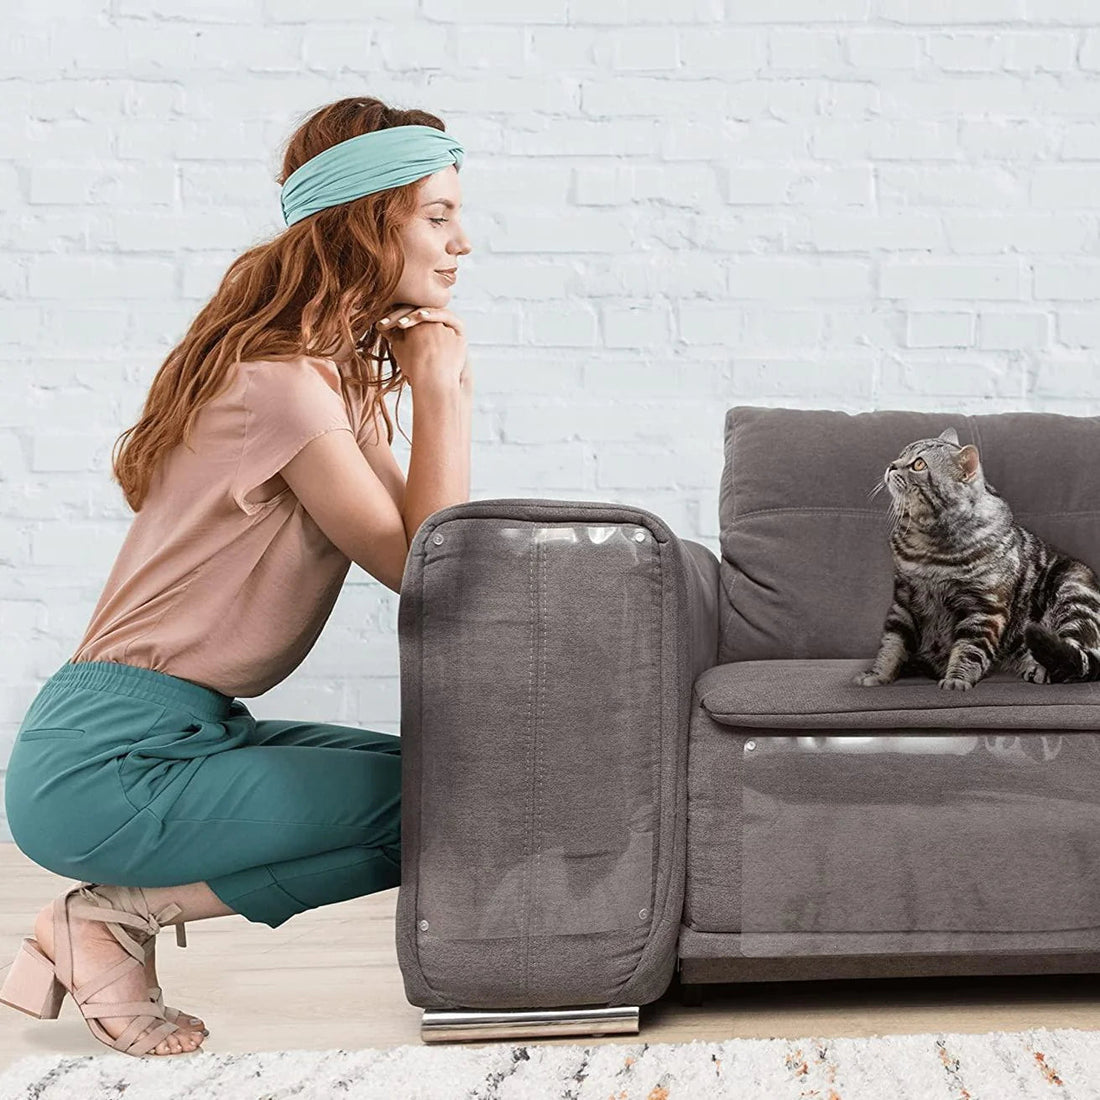 Skydda dina möbler från klös & riv på bästa sätt för kattägare - Djurslottet